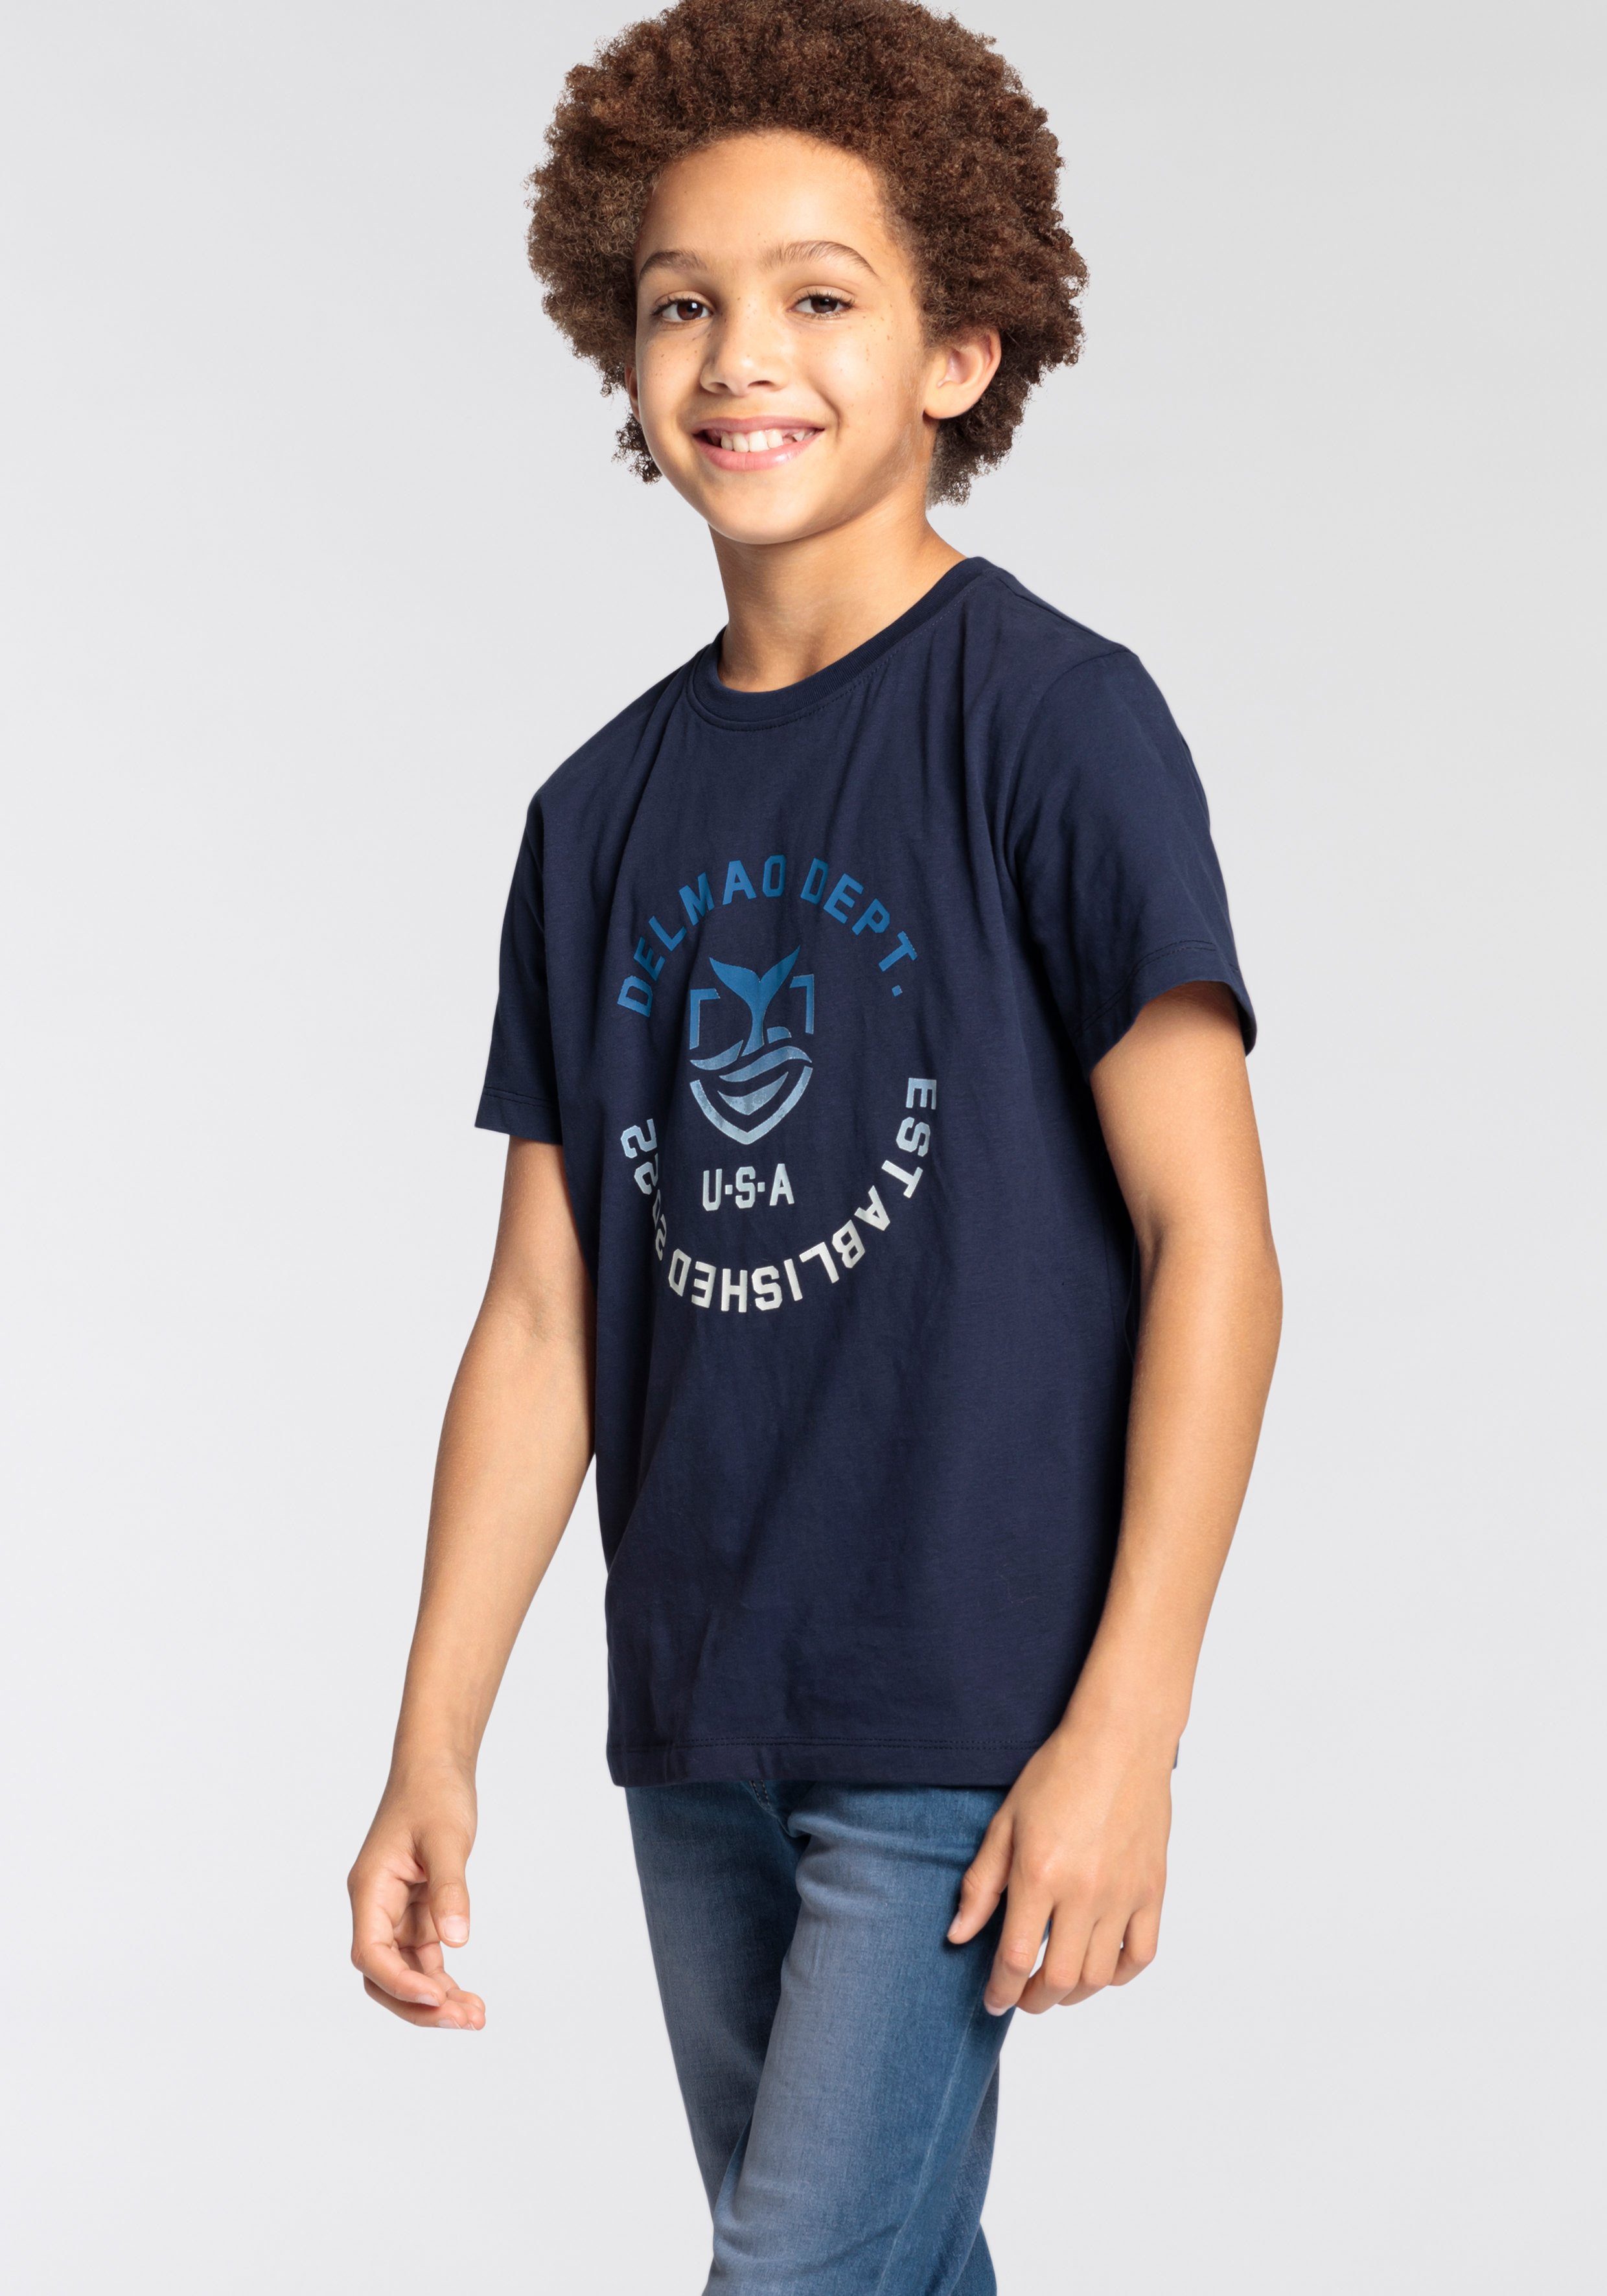 DELMAO T-Shirt für Jungen, mit NEUE Logo-Print. MARKE